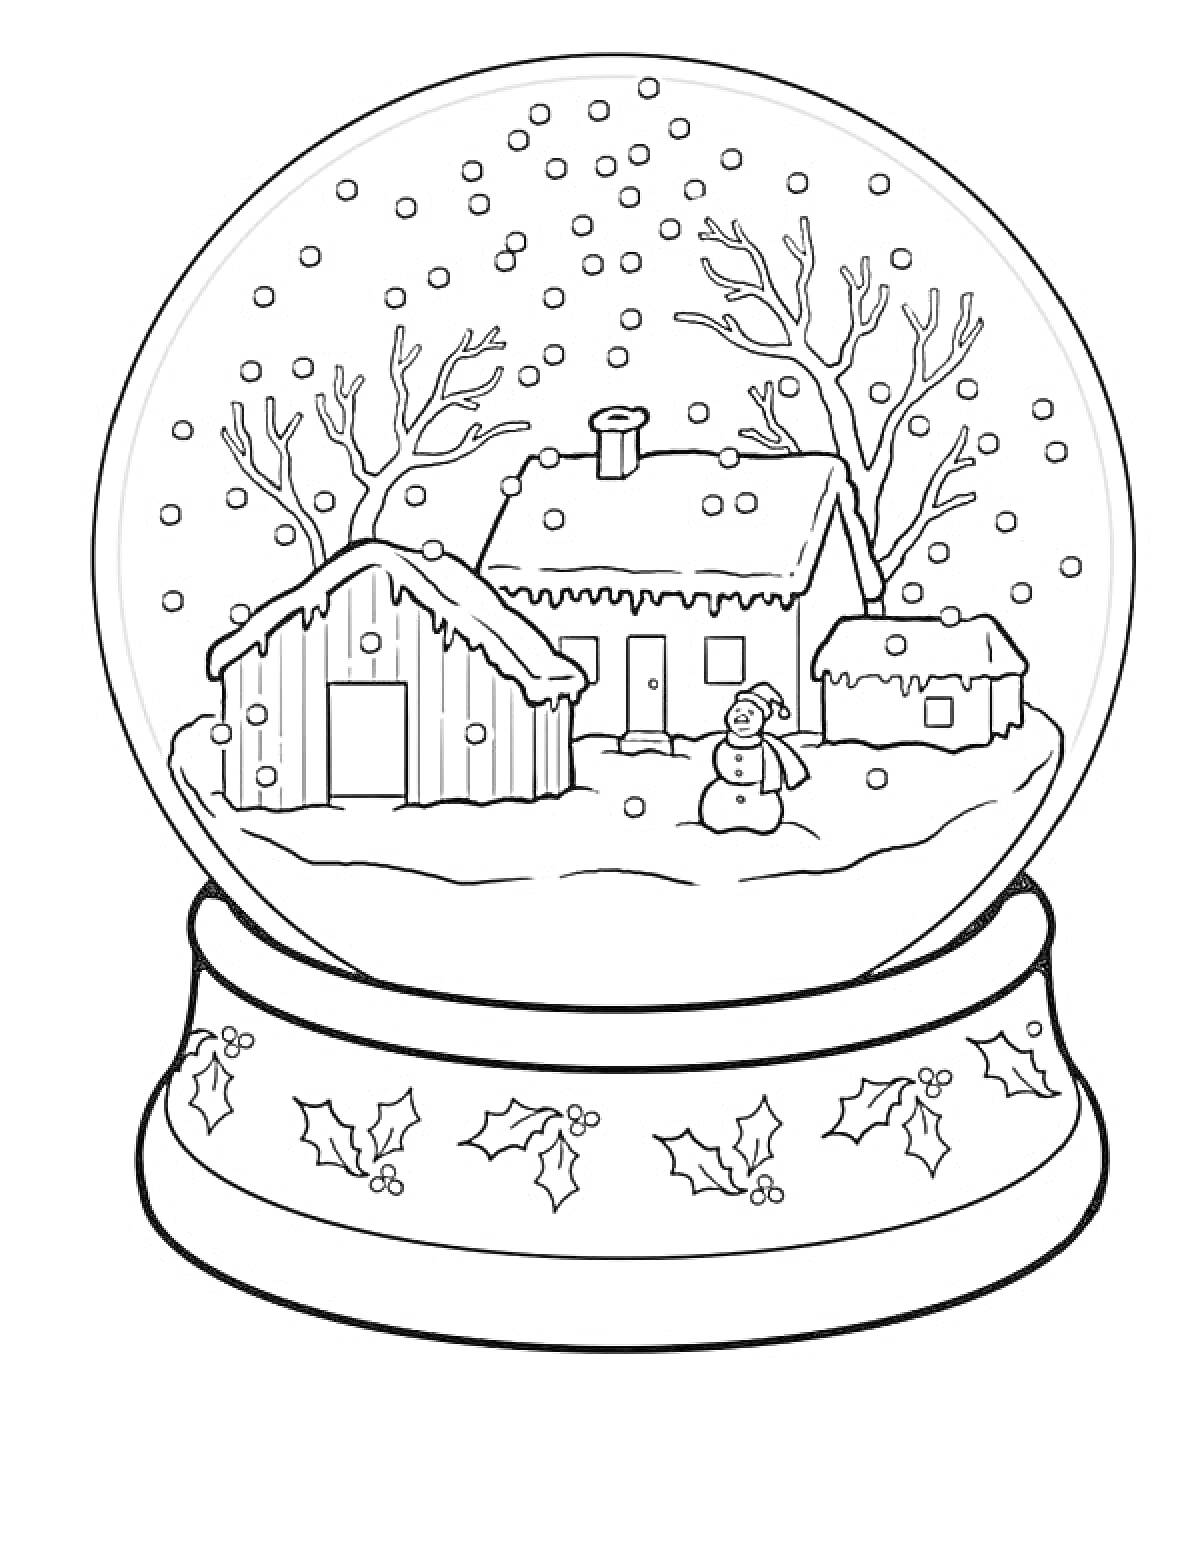 Снежный шар с зимним пейзажем, включающим домик, сарай, небольшой домик и снеговик, вокруг падает снег, деревья без листьев